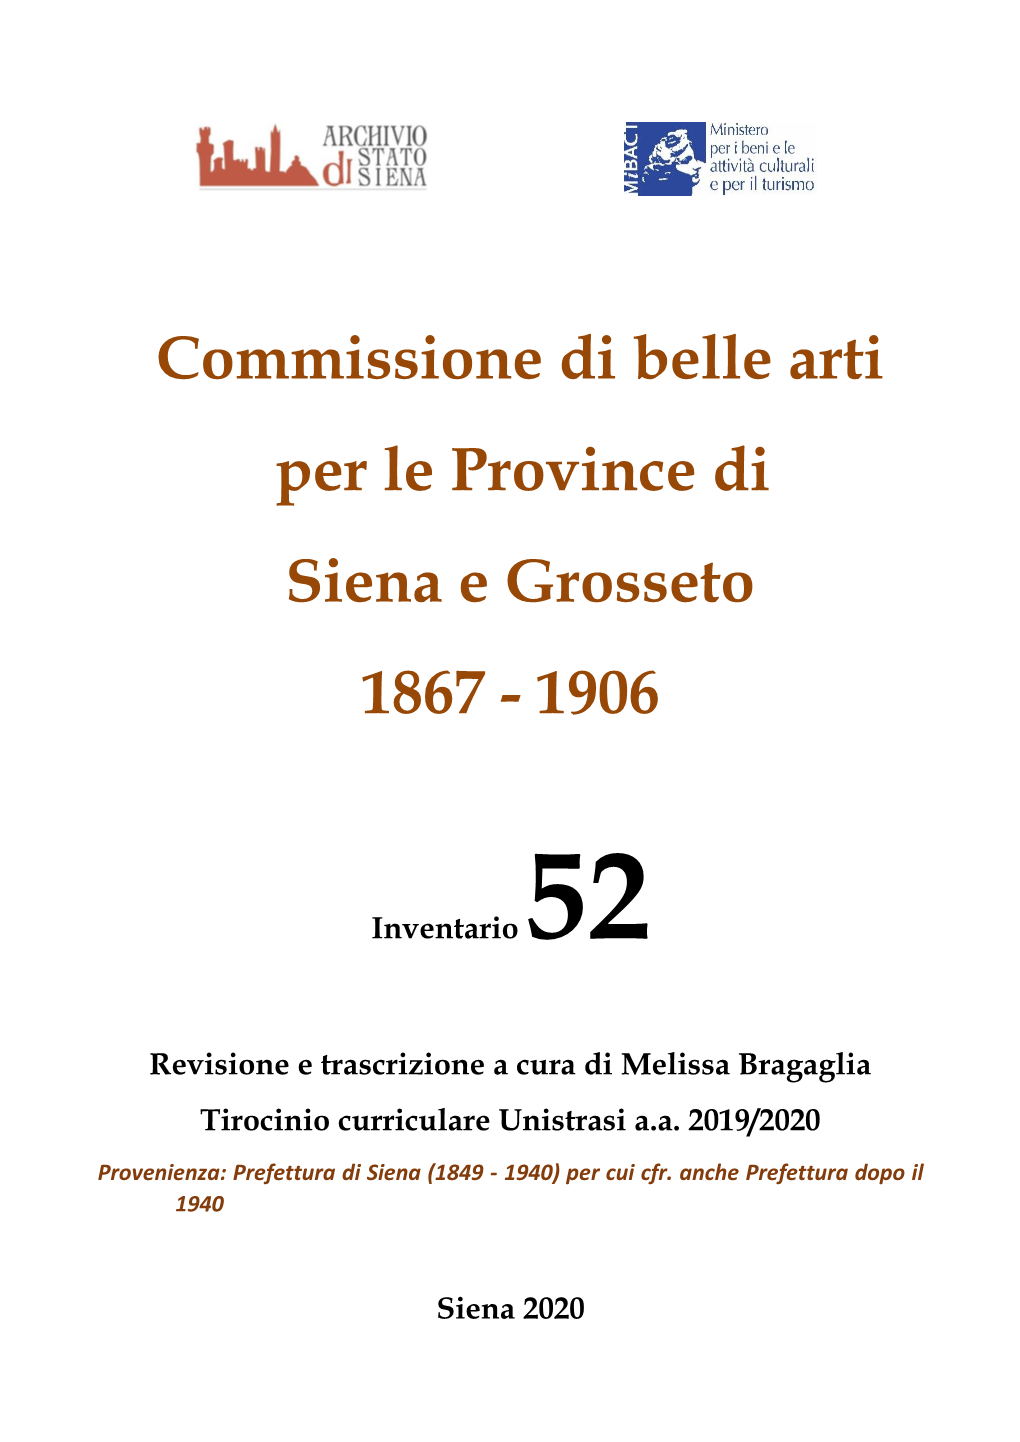 Commissione Di Belle Arti Per Le Province Di Siena E Grosseto 1867 - 1906